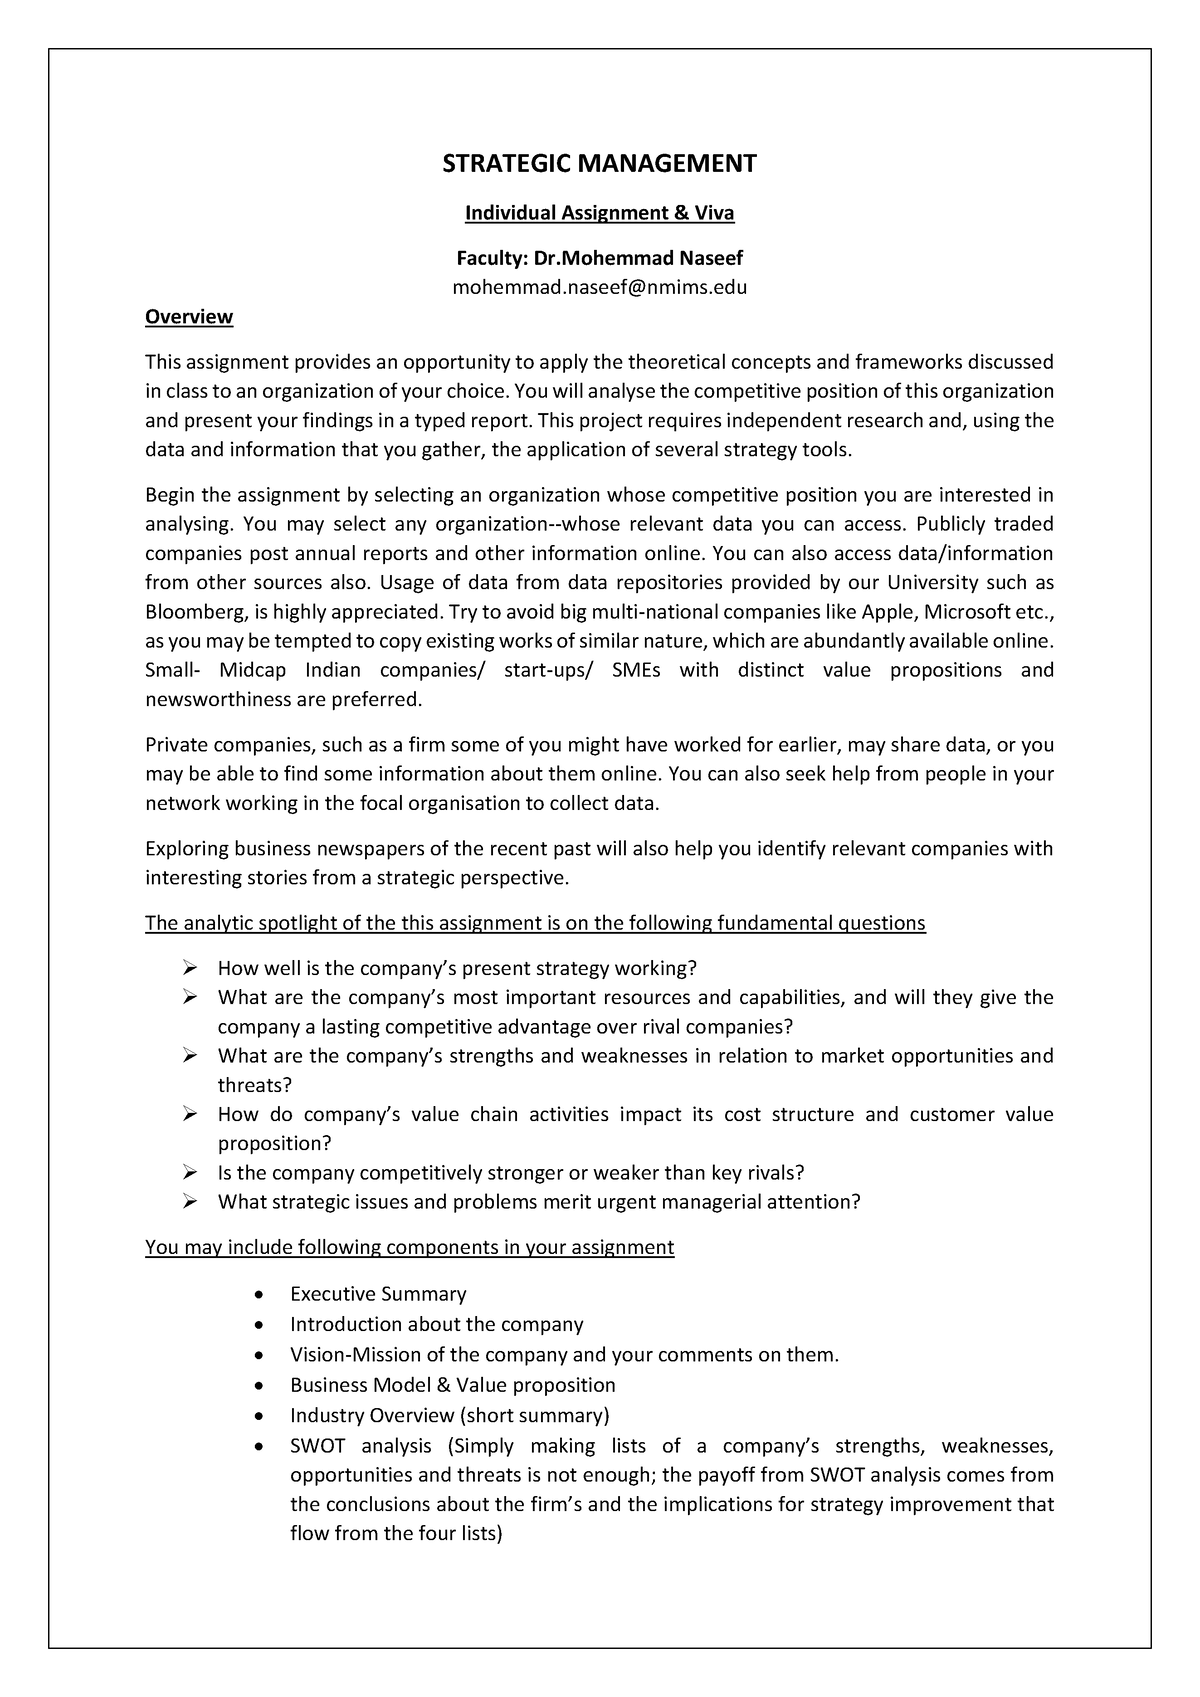 strategic management individual assignment pdf